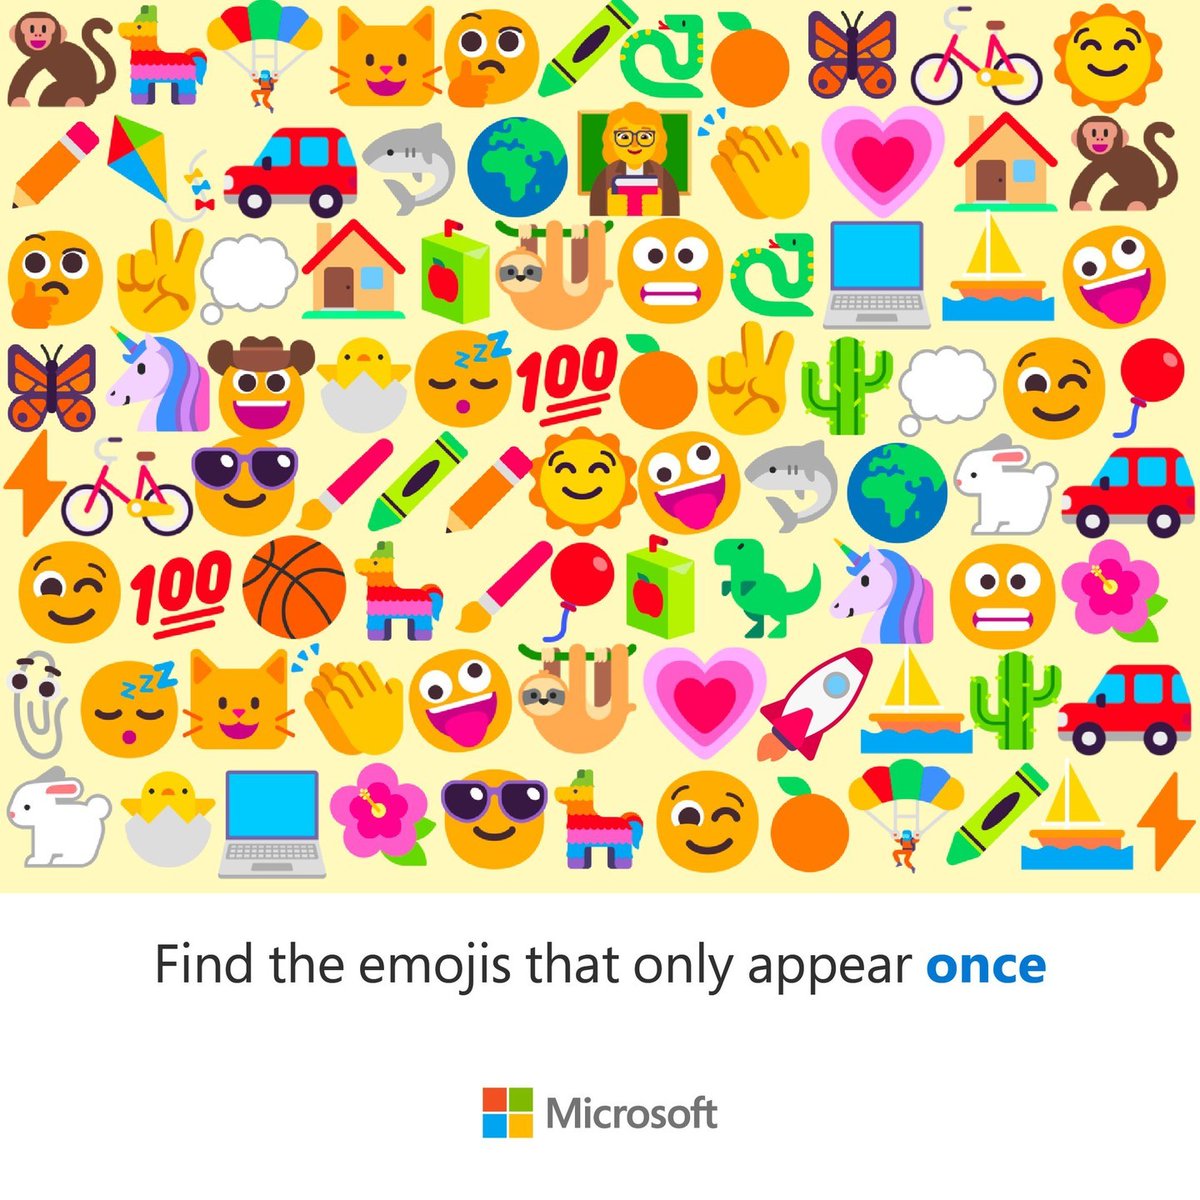 Encuentra los emojis que aparecen solo una vez. 🕵️‍♀️🔍 ¿Cuántos encontraste? 🤔